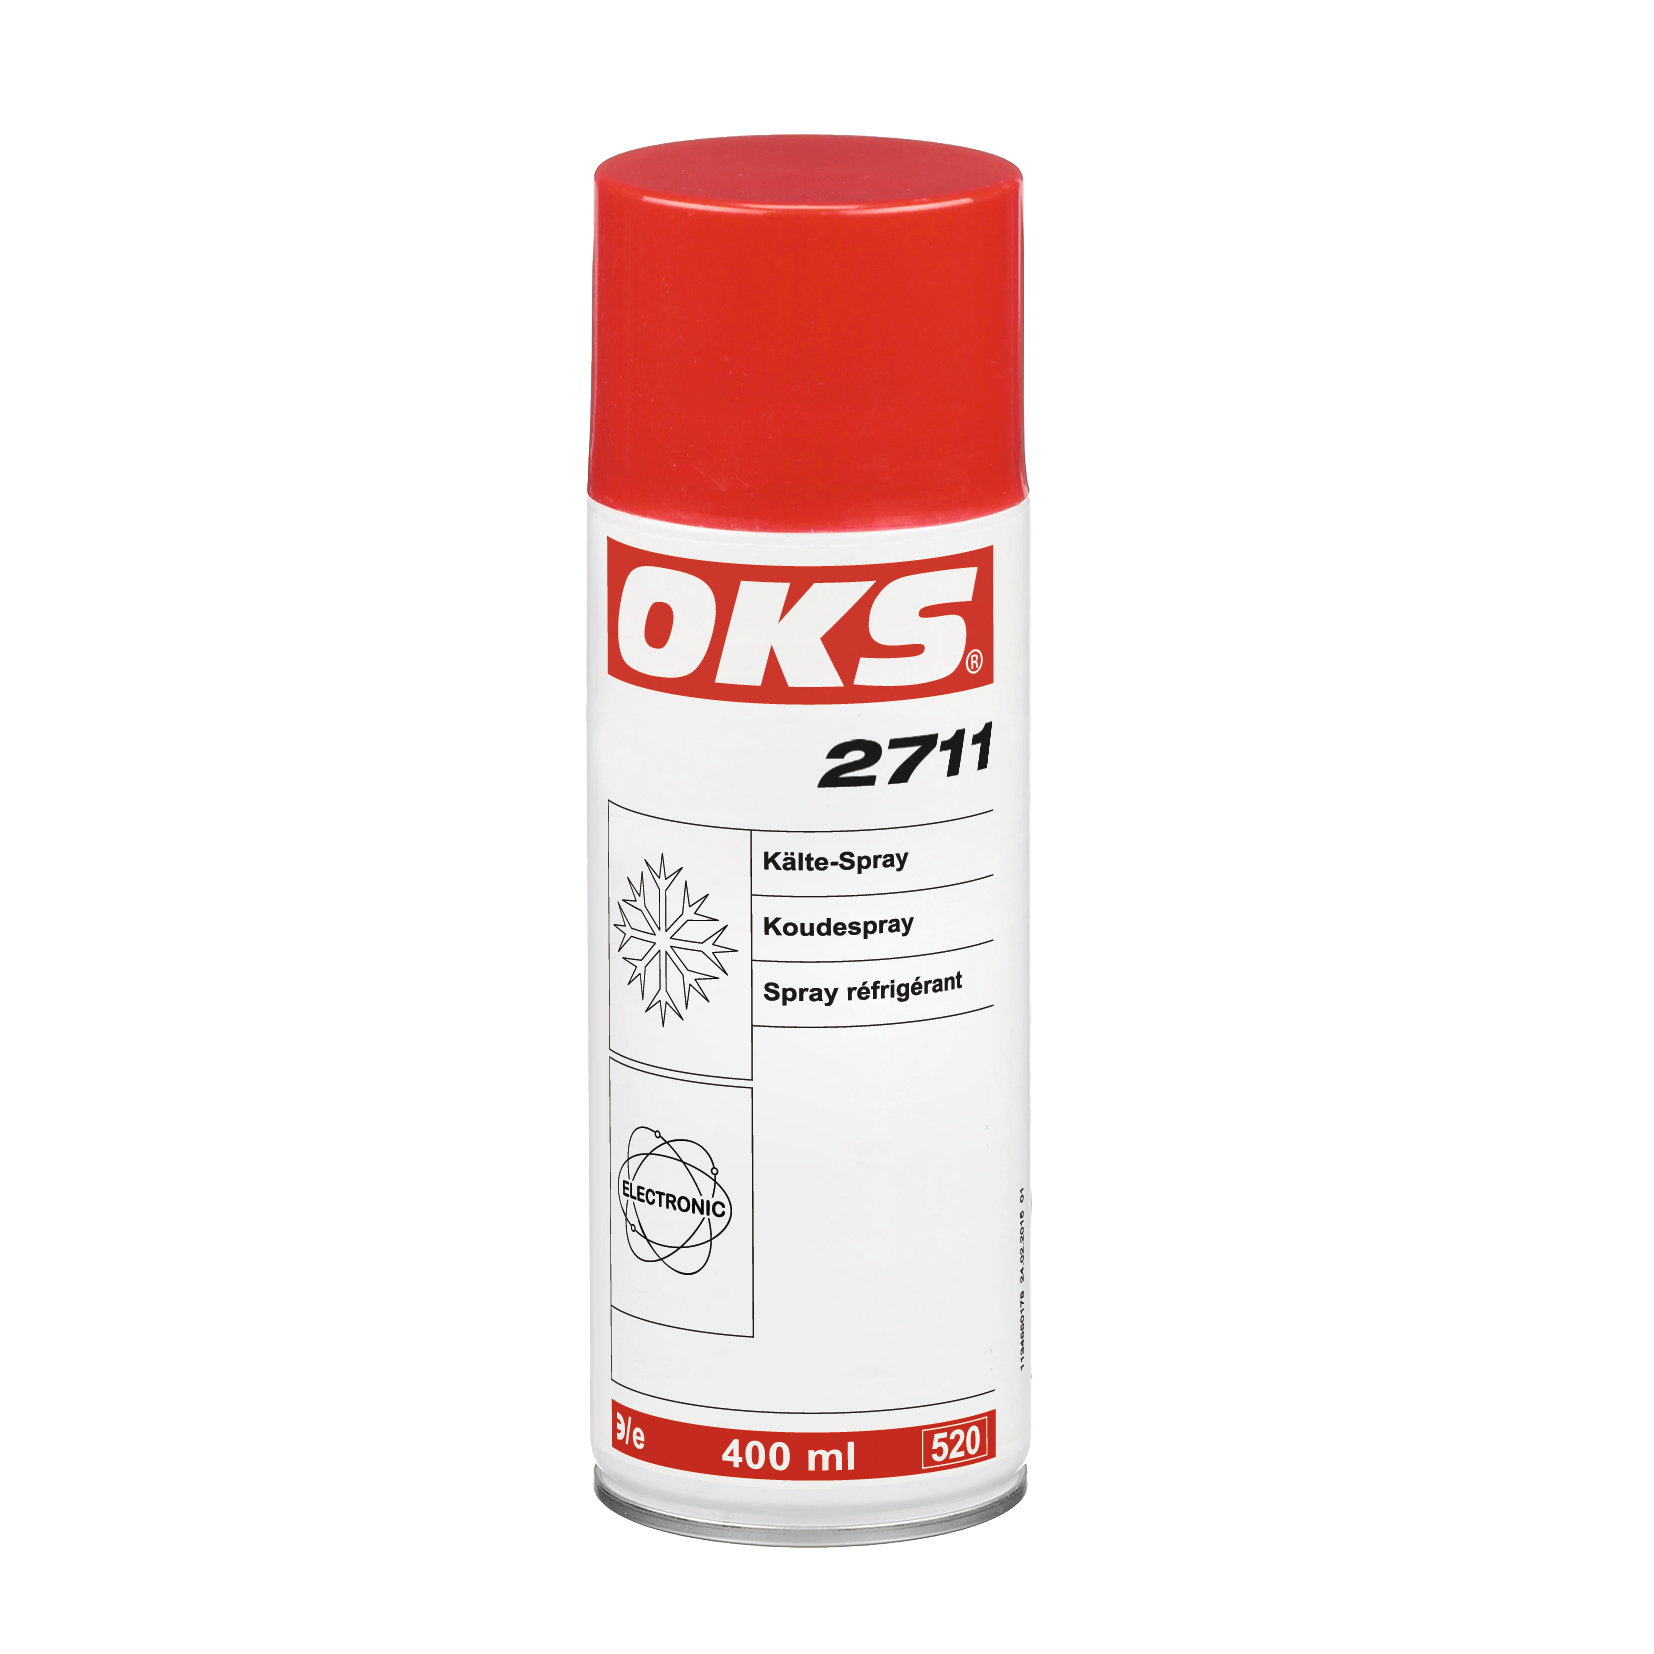 OKS2711-400ML OKS 2711 is een koudespray voor het snel opsporen van onderbrekingen met een thermische oorzaak in elektrische schakelingen en modules.